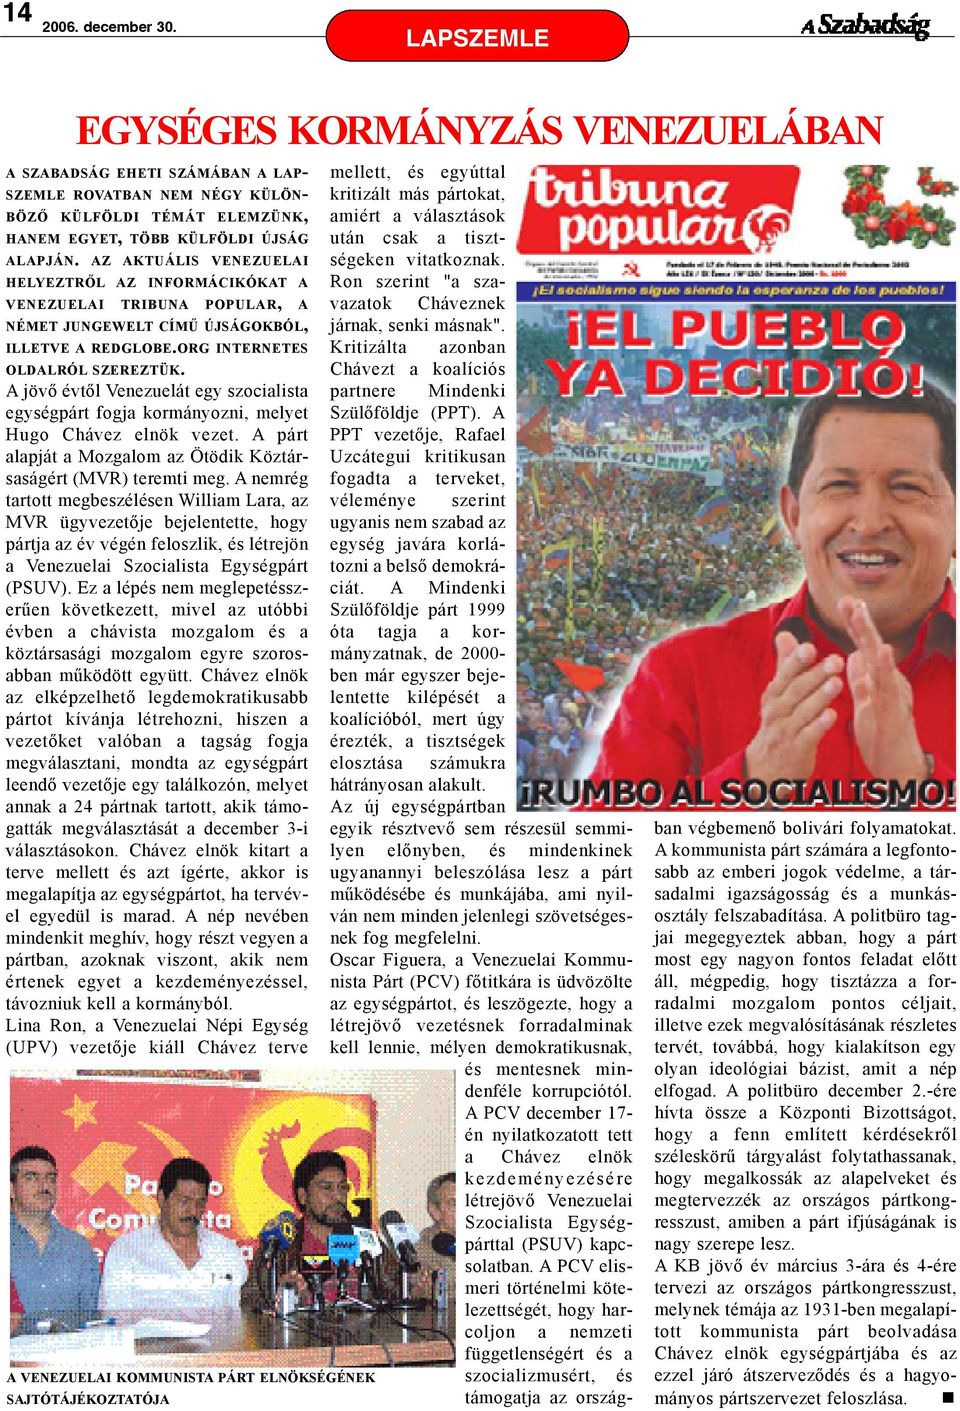 A jövõ évtõl Venezuelát egy szocialista egységpárt fogja kormányozni, melyet Hugo Chávez elnök vezet. A párt alapját a Mozgalom az Ötödik Köztársaságért (MVR) teremti meg.